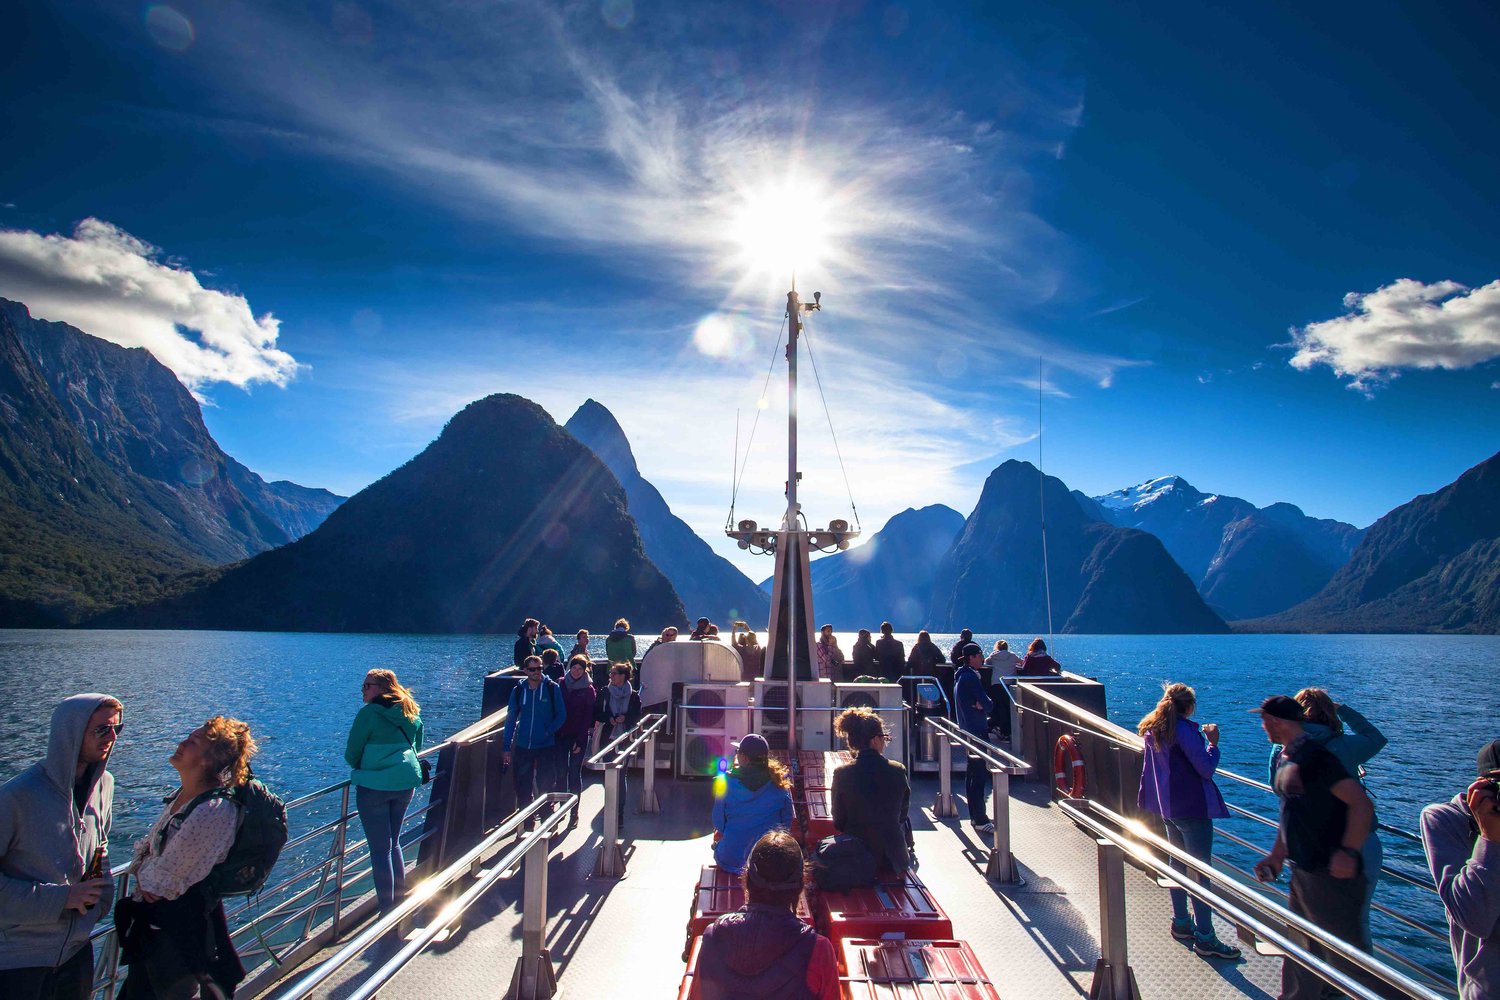 Starte jetzt deinen Adventure Trip in Neuseeland mit AIFS